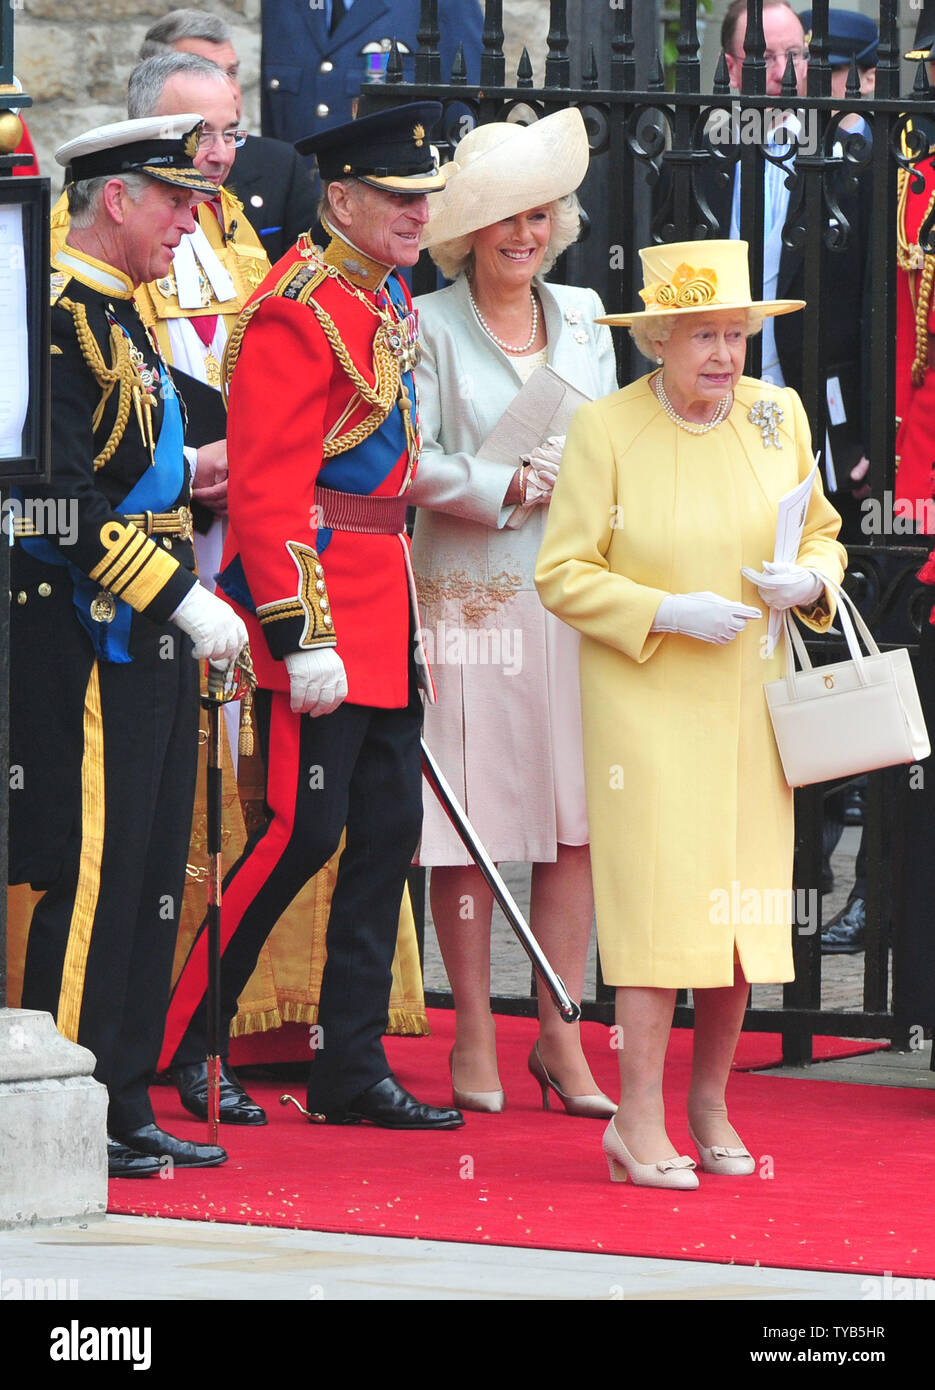 Königin Elizabeth II., der Herzog von Edinburgh, Prinz Charles und Camilla, Herzogin von Cornwall, lassen Sie die Westminster Abbey nach der königlichen Hochzeit zwischen Prinz William und Prinzessin Katharina in London am 29. April 2011. UPI/Kevin Dietsch Stockfoto